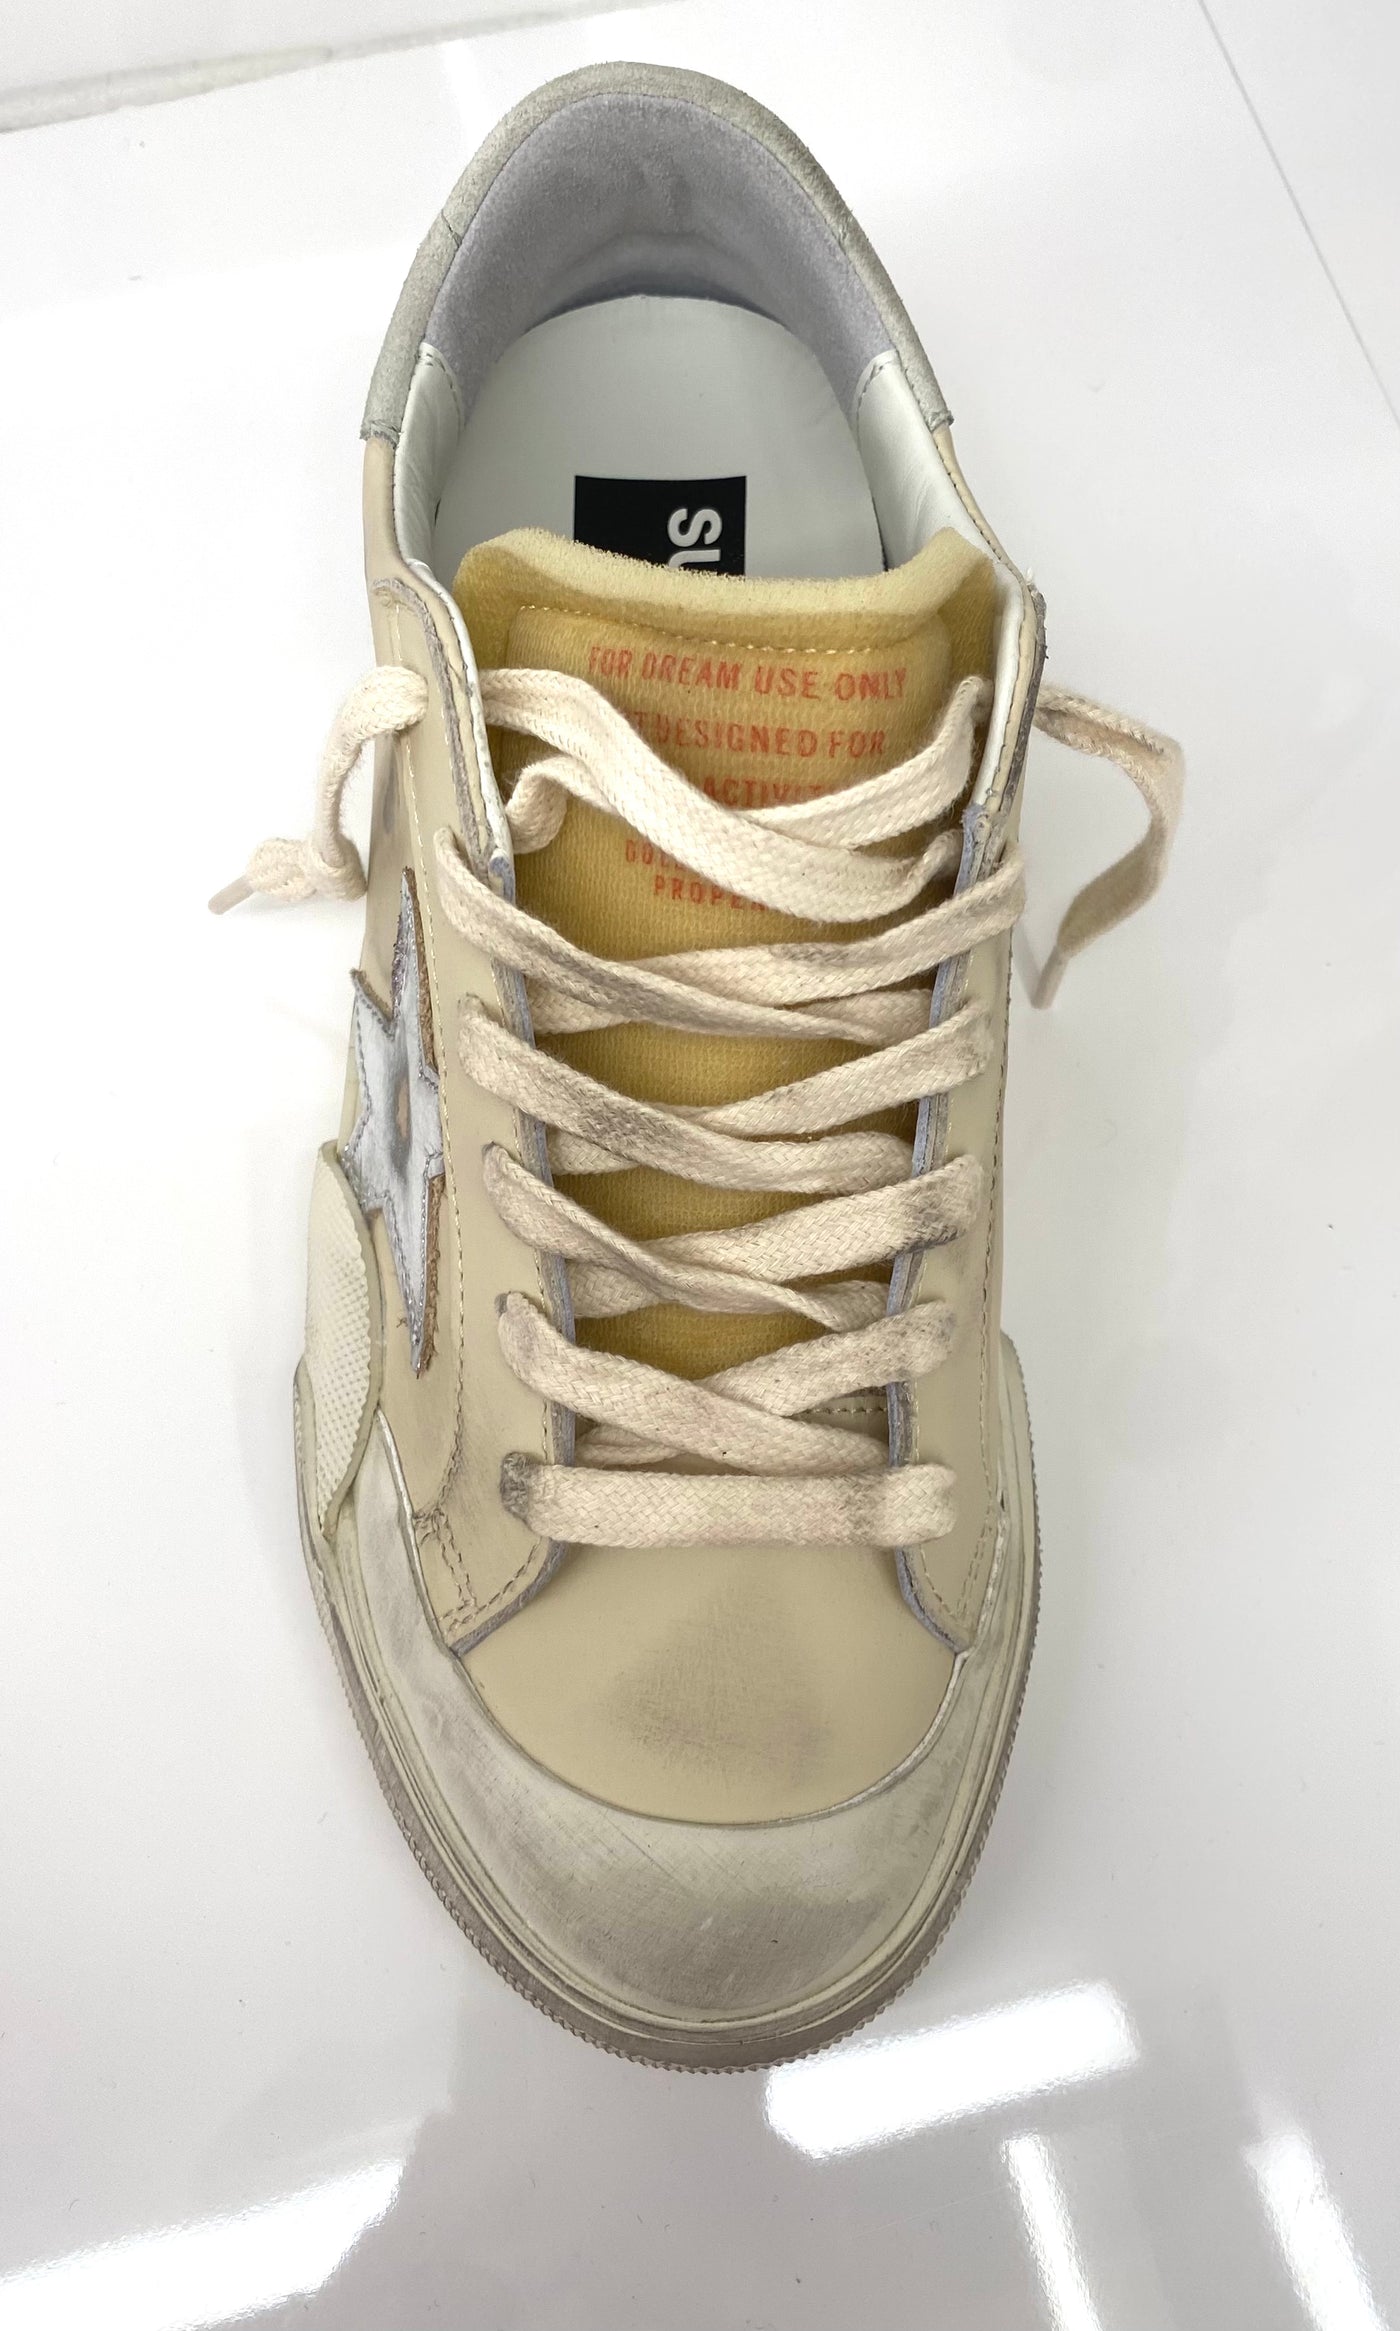 SUPERSTAR PENSTAR sneaker - Cream/silver